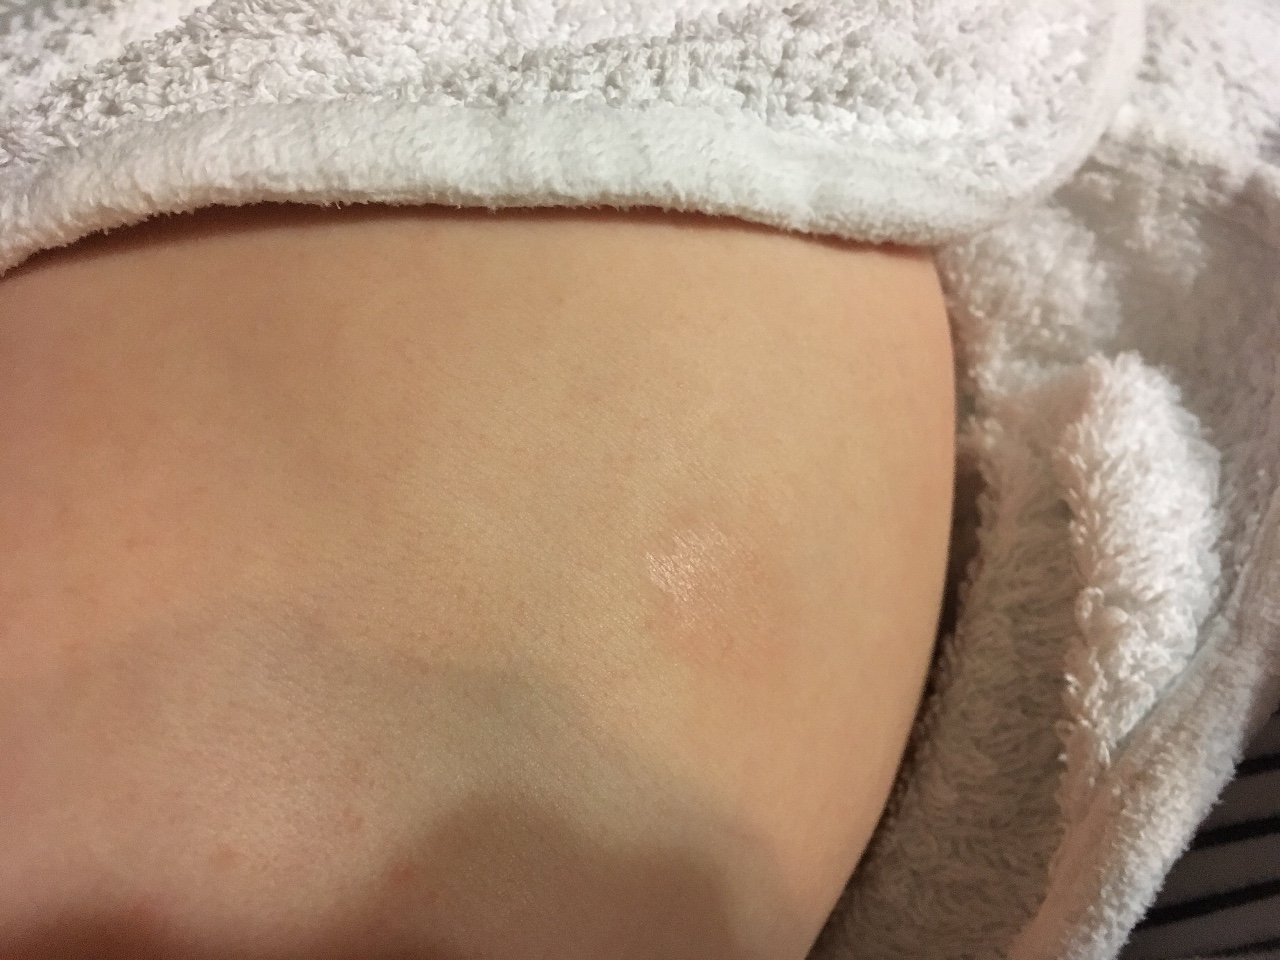 шелушится кожа на груди во время беременности фото 85